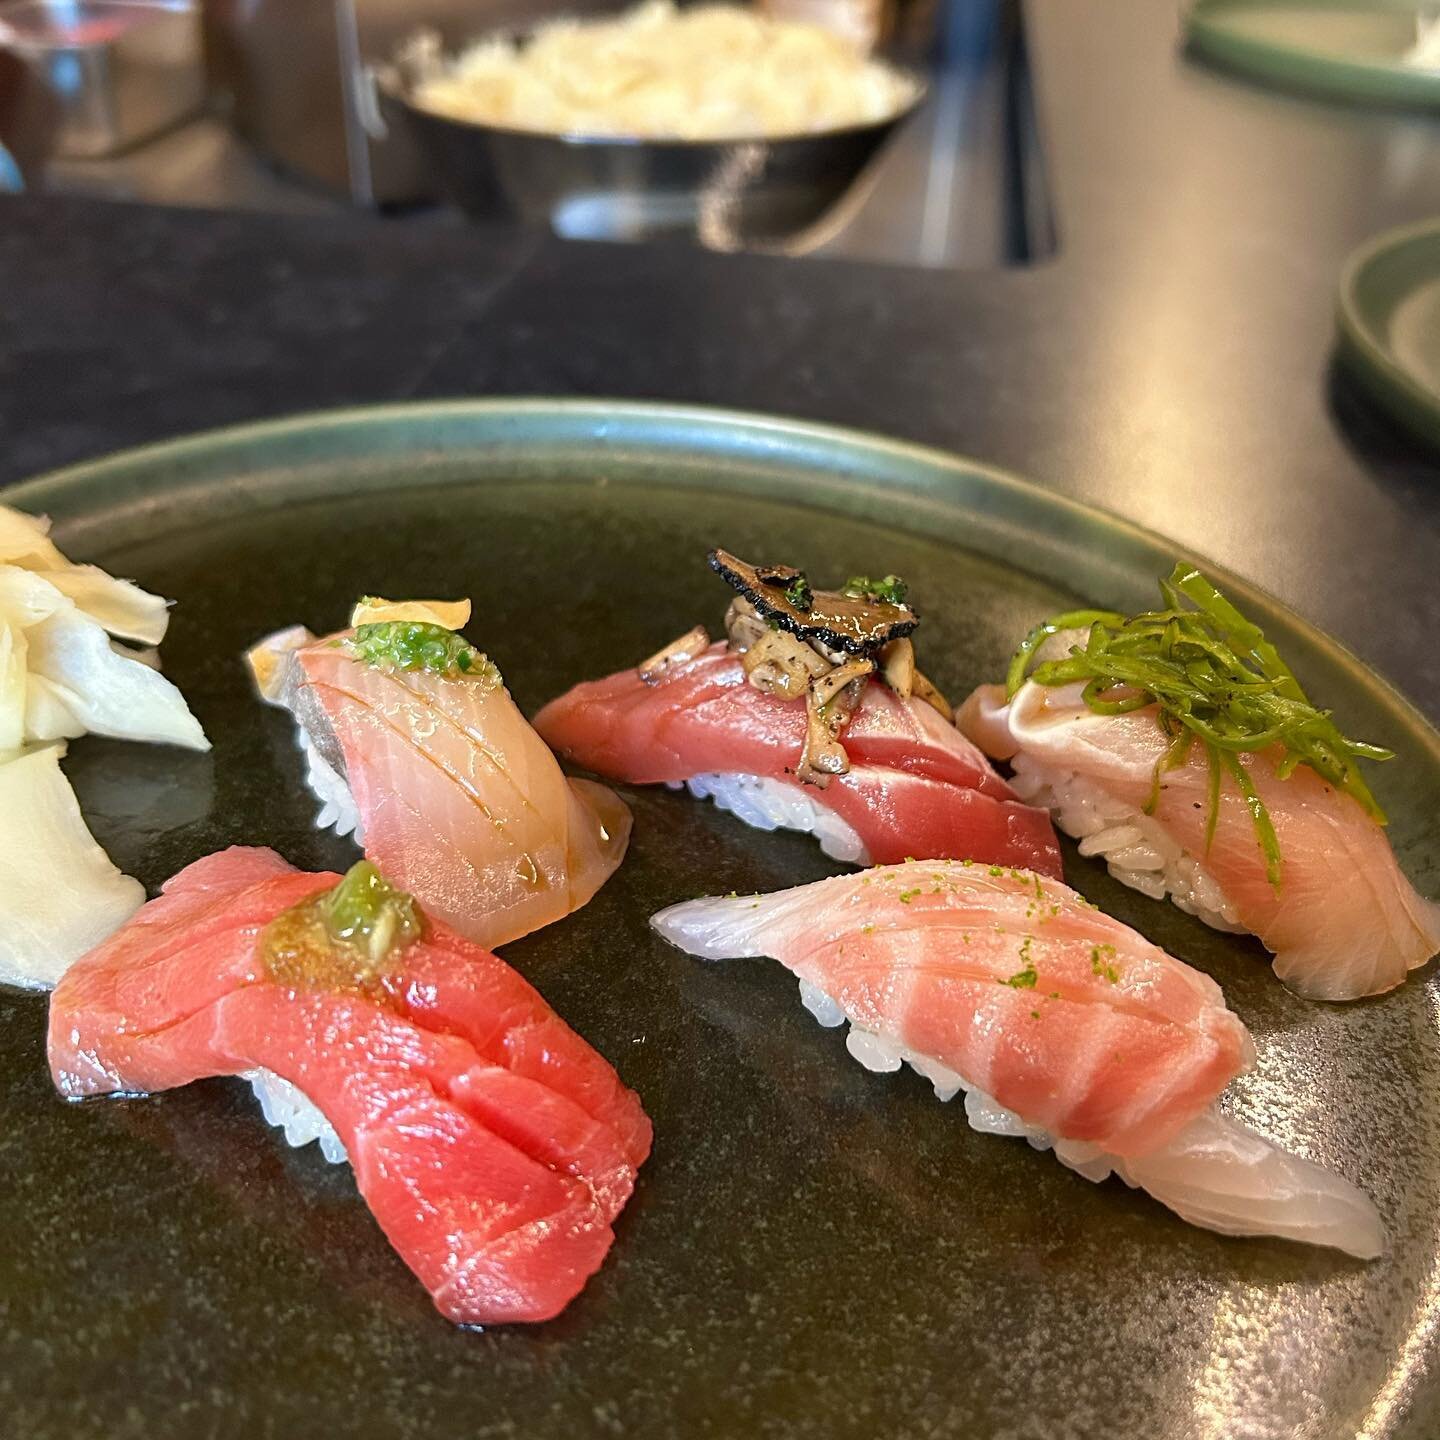 Serious sushi night @thirteenwaterny 
.
.
.
#sushi #sushichef #omakase #sushigirls #sushinight #girlsnight #sushinyc #nycsushi #bestsushinyc #eastvillage #eastvillageeats #eastvillagenyc #alphabetcity #goodeats #nycfood #nyceeeeeats #forkyeah #chopst